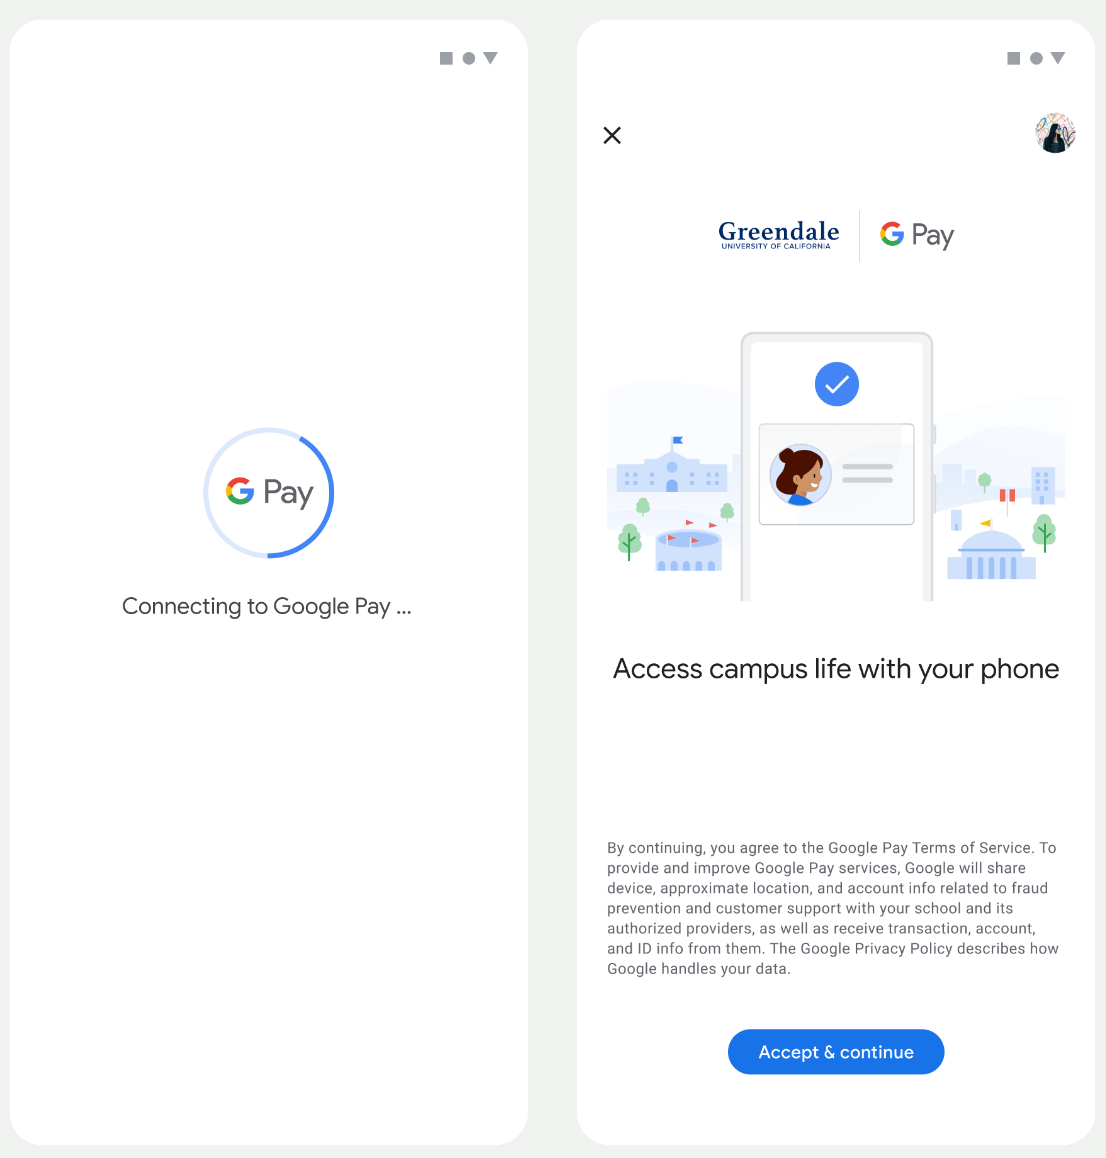 Auf dem ersten Bildschirm stellt die App eine Verbindung zu Google Wallet her. Auf dem zweiten Bildschirm akzeptiert der Nutzer die Nutzungsbedingungen und fährt fort.